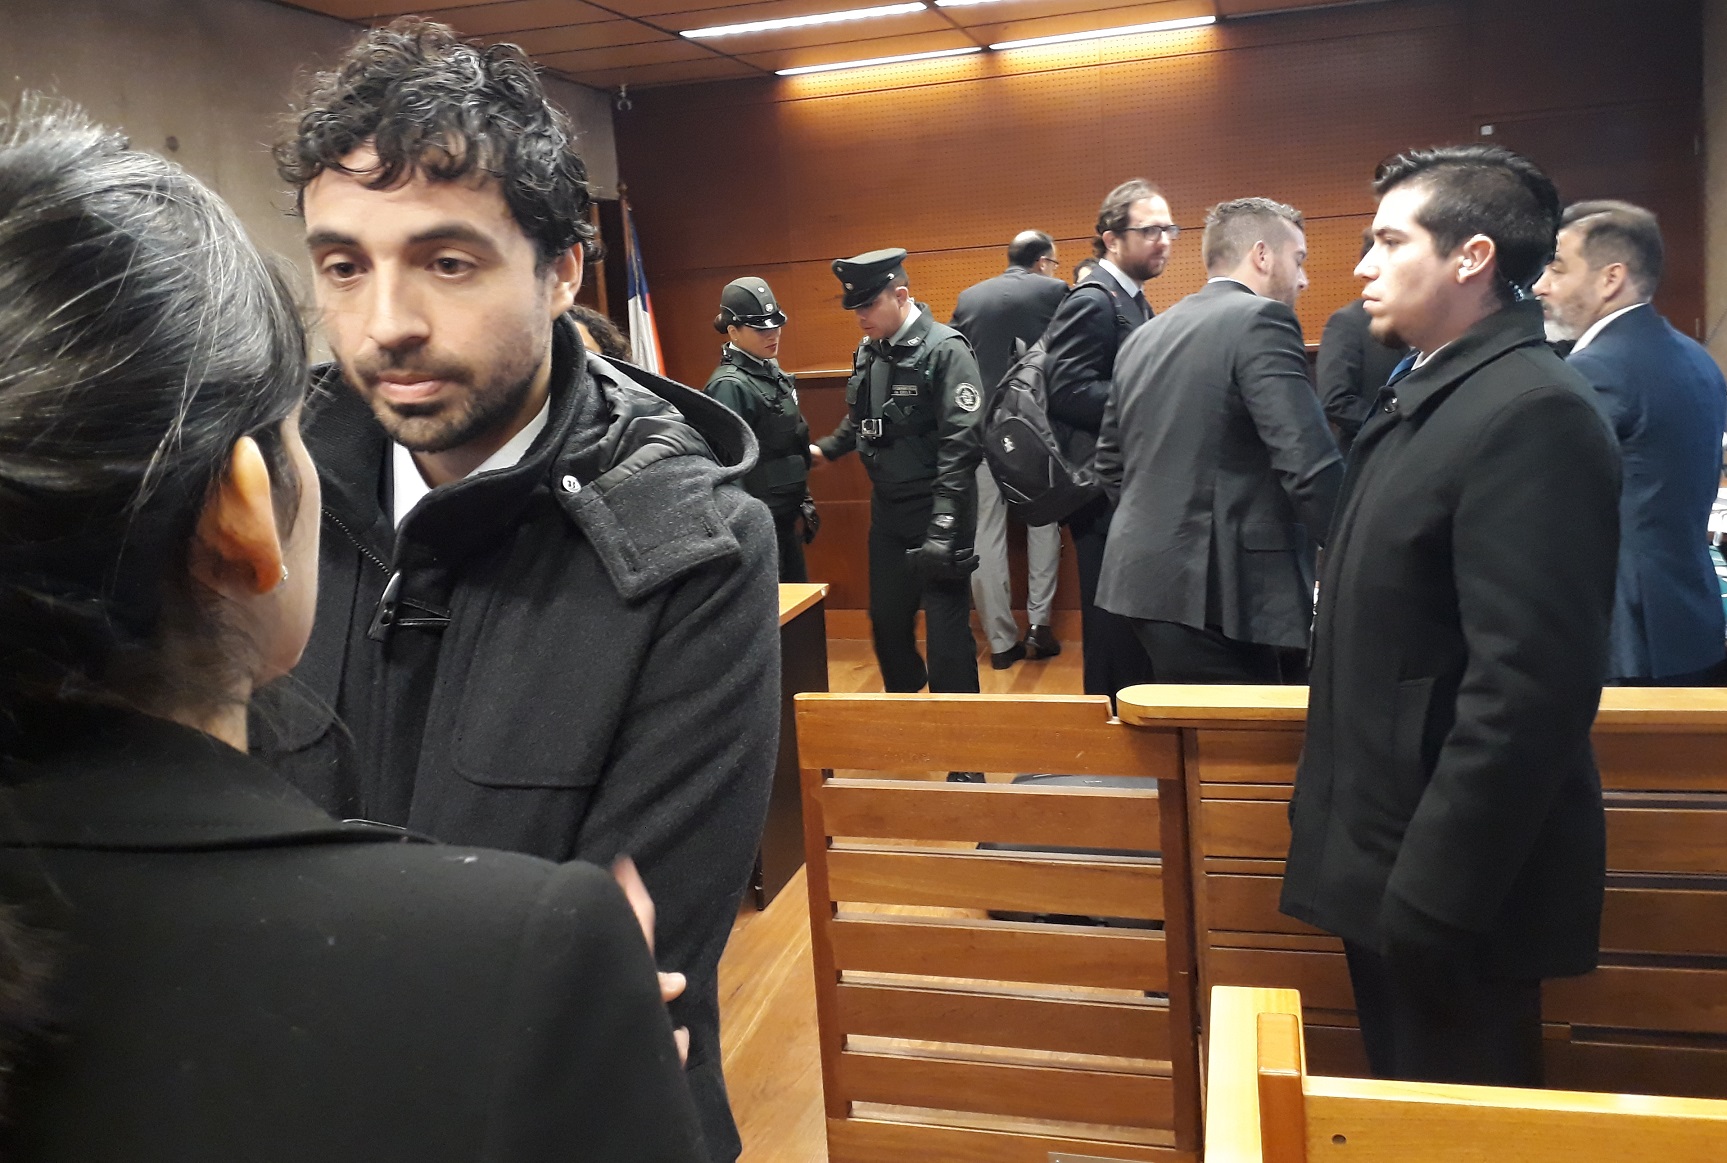 El defensor público Matías Canales tras audiencia de Cautela de Garantías por agresiones a imputados ecuatorianos en penal Santiago I